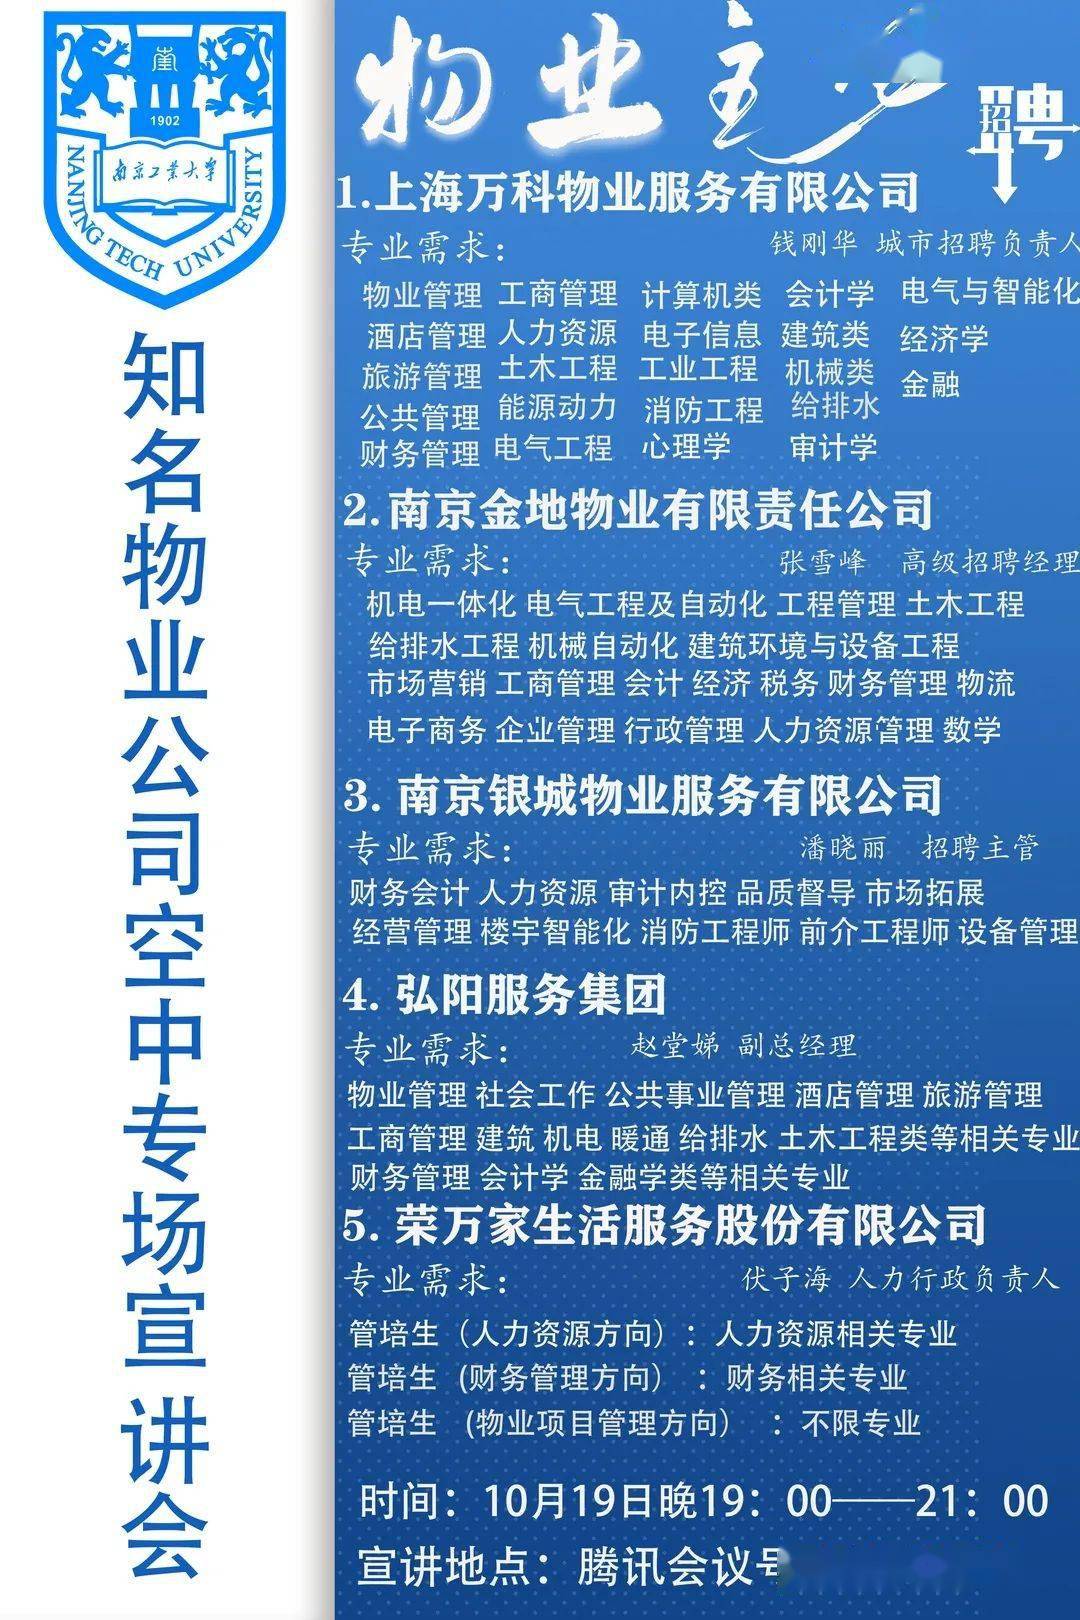 物业公司招聘信息_中建三局物业公司招聘信息 武汉市物业管理协会(2)